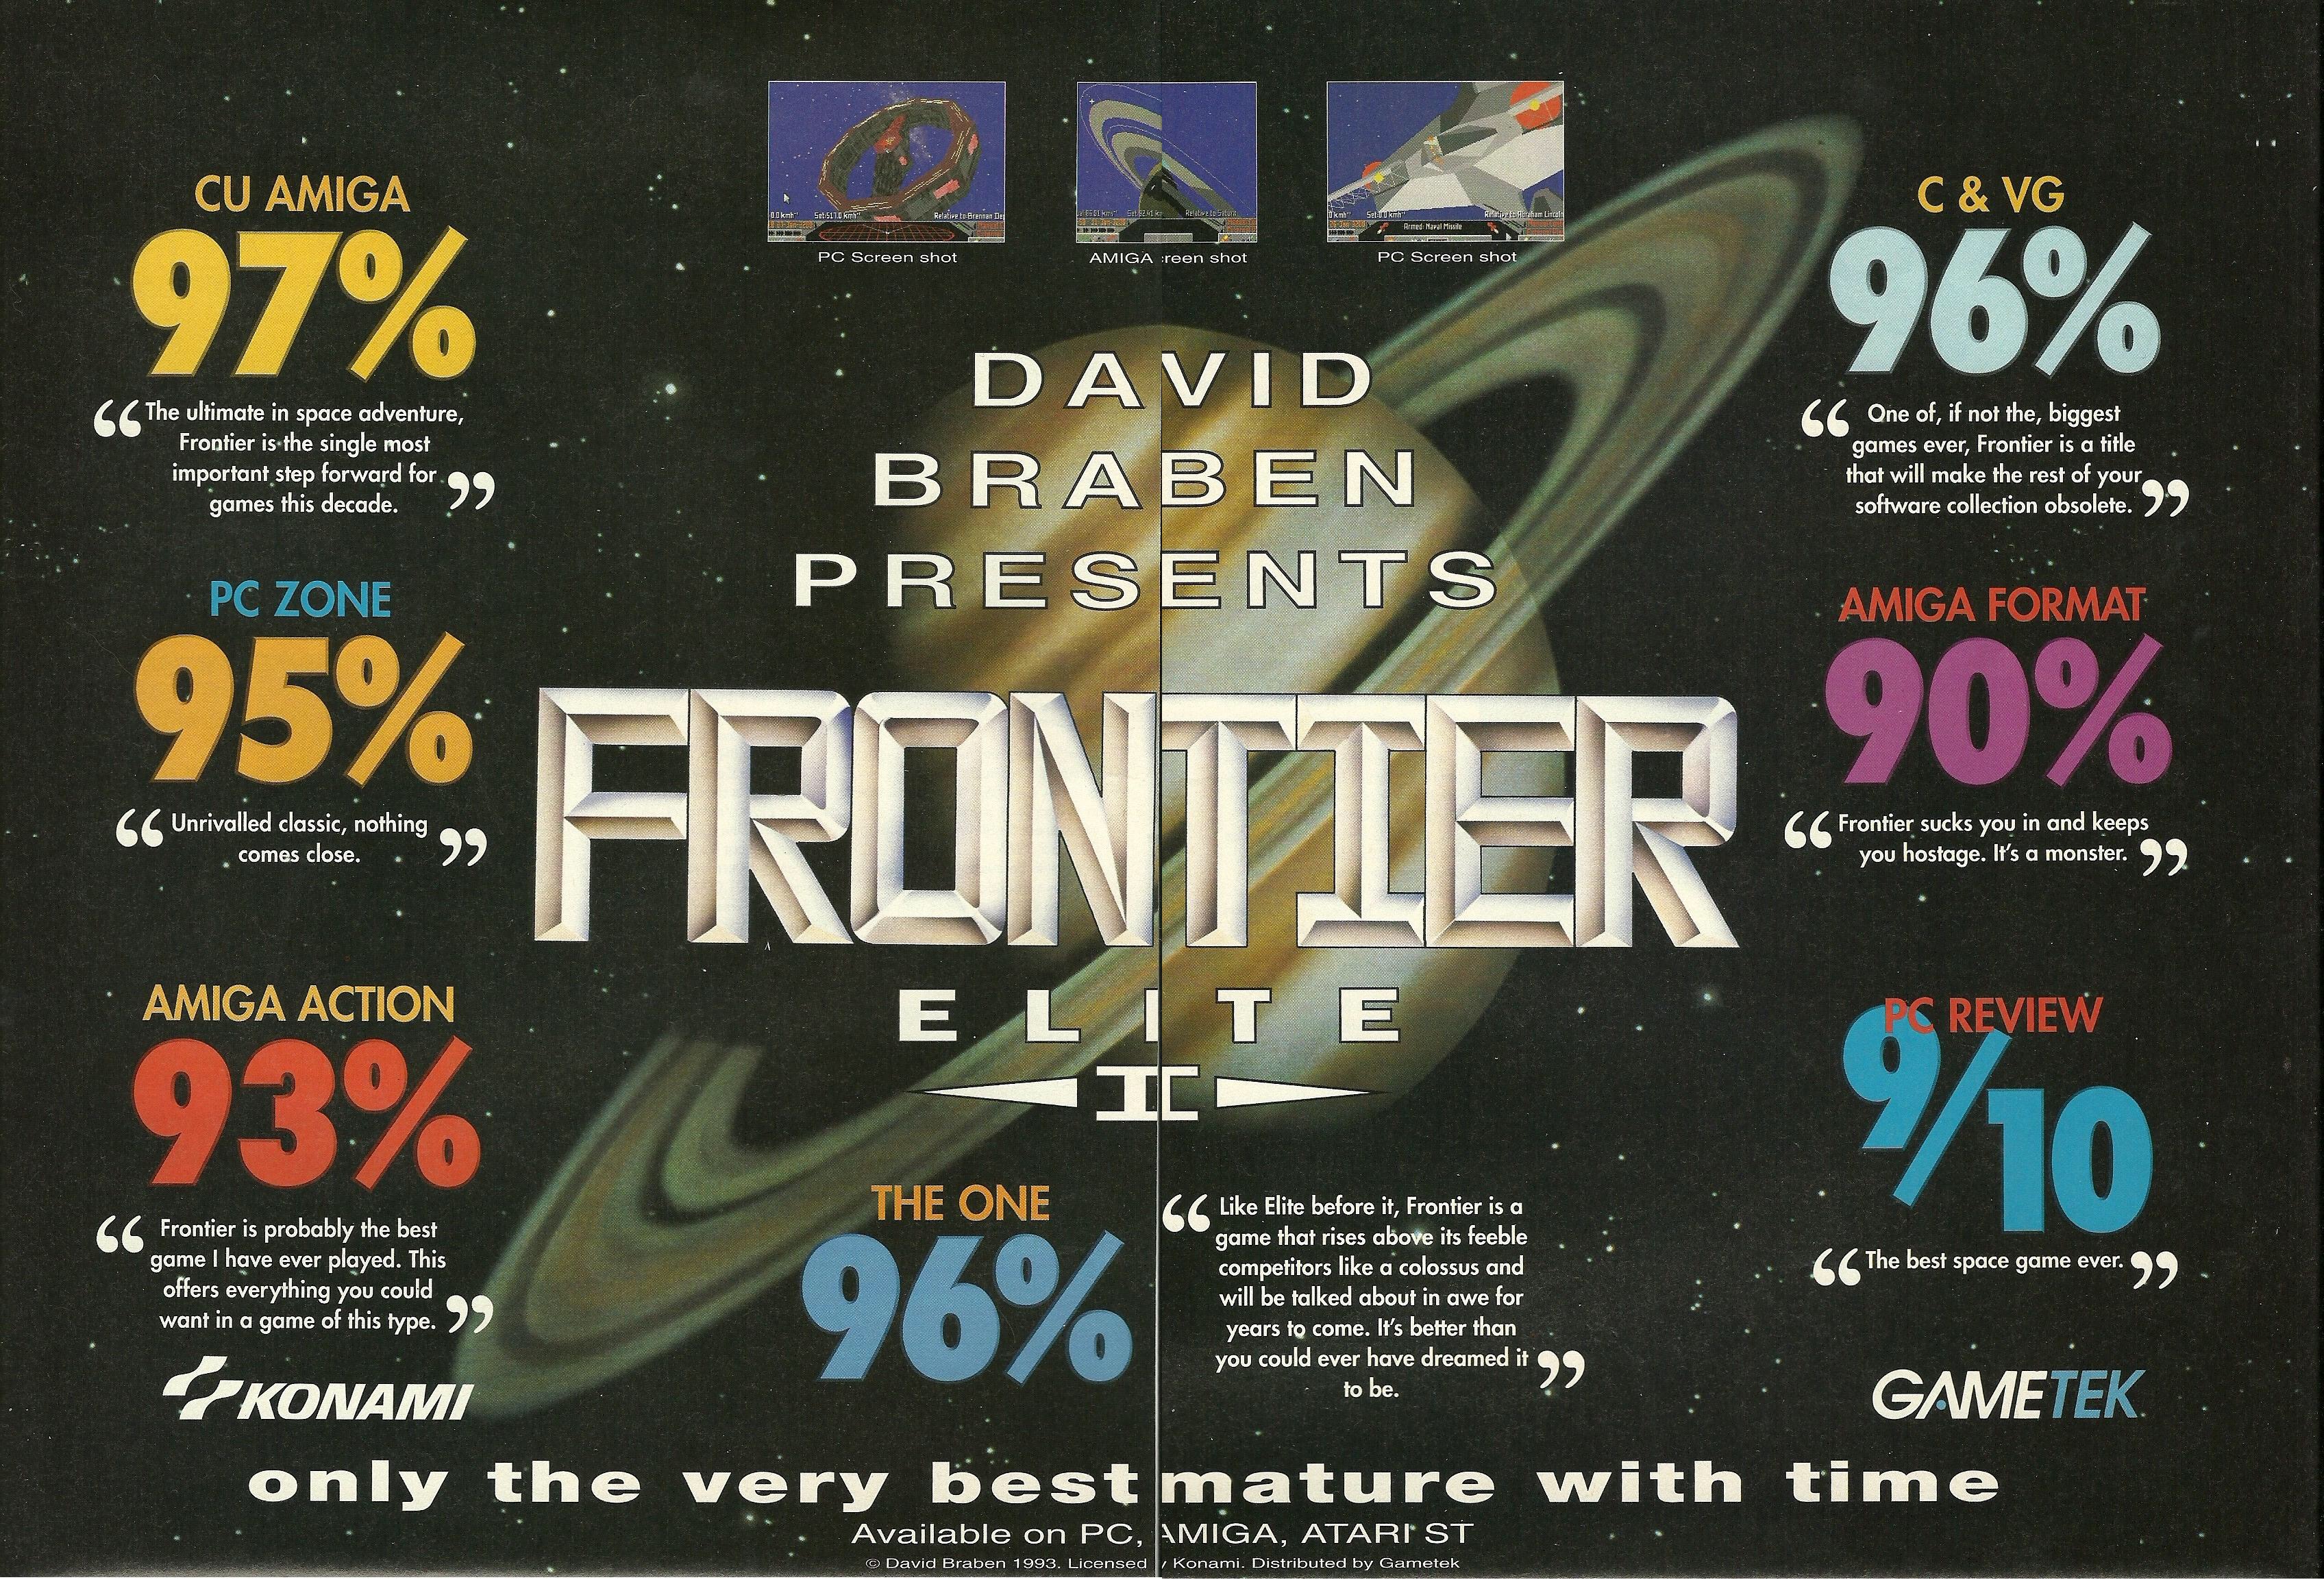 Mit Frontier - ELITE II mag das 1985er-Original gut gereift sein aber der Ur-Amiga 500 steigt langsam aber sicher aus. Zu viel, zu schnell, da sehnt man sich zurück, als die Marble Madness-Umsetzung die Zukunft einläutete...A500 - Nie vergessen.